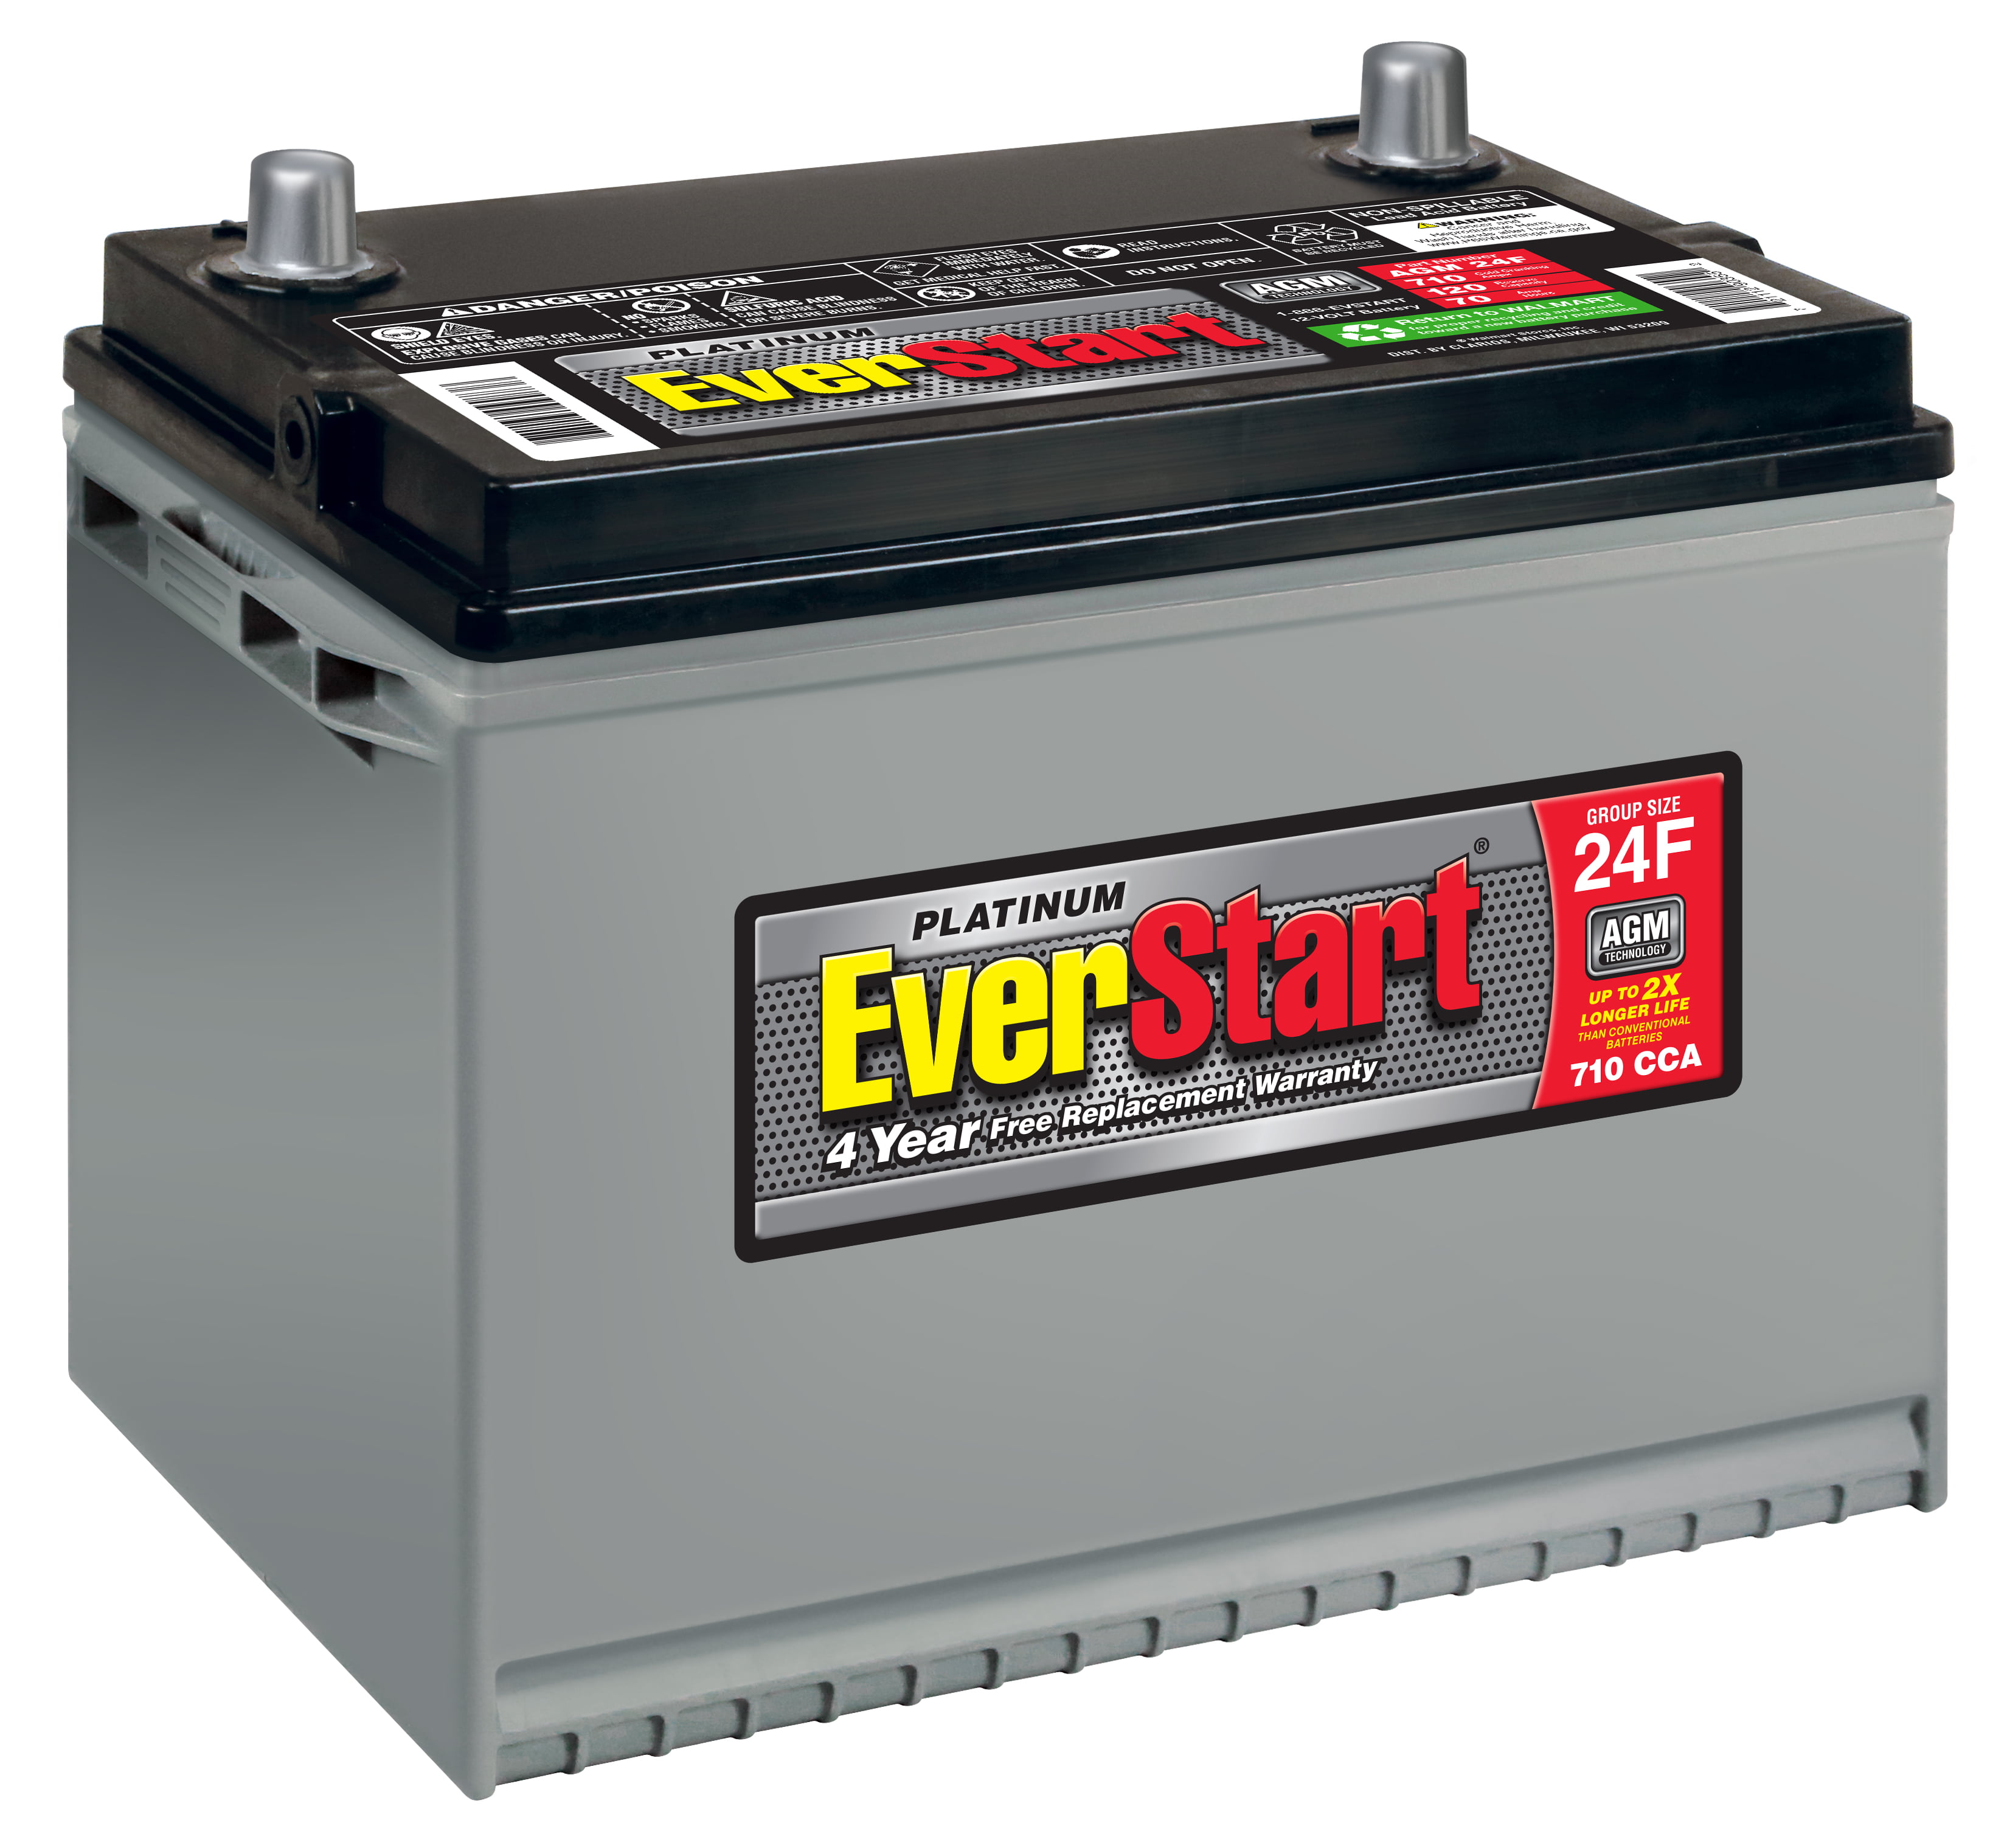 EverStart Platinum AGM Battery, Group 24F – Walmart Inventory Checker ...